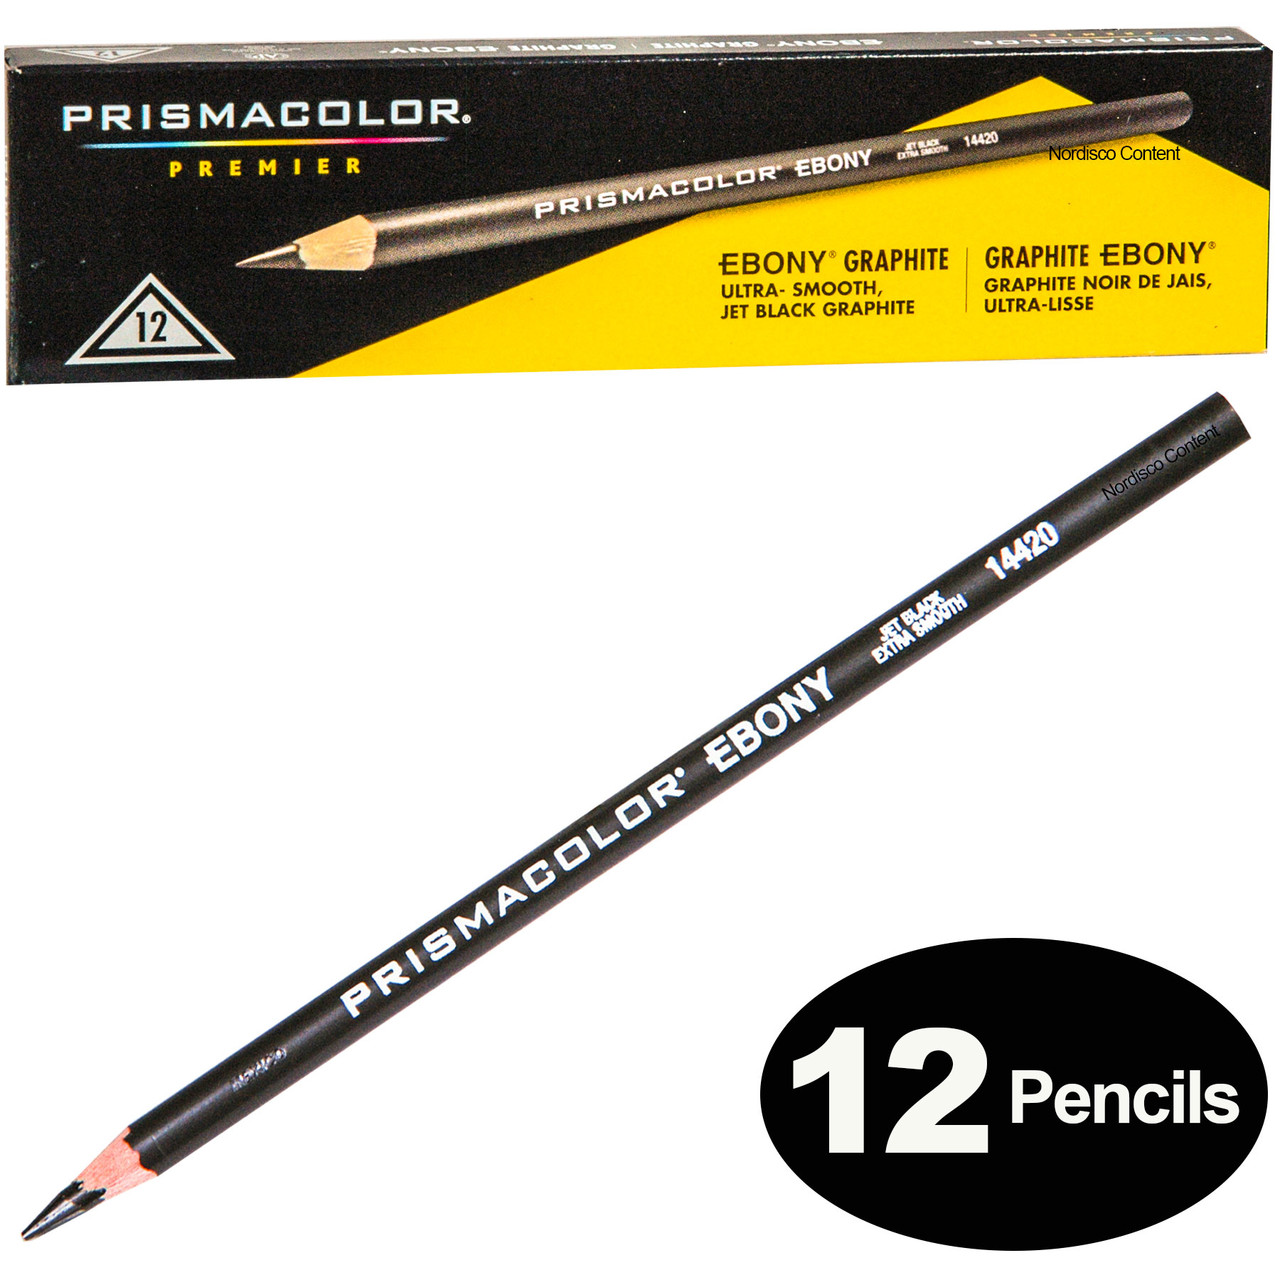 Prismacolor Ebony Graphite Drawing Pencils, Black, Box Of 12